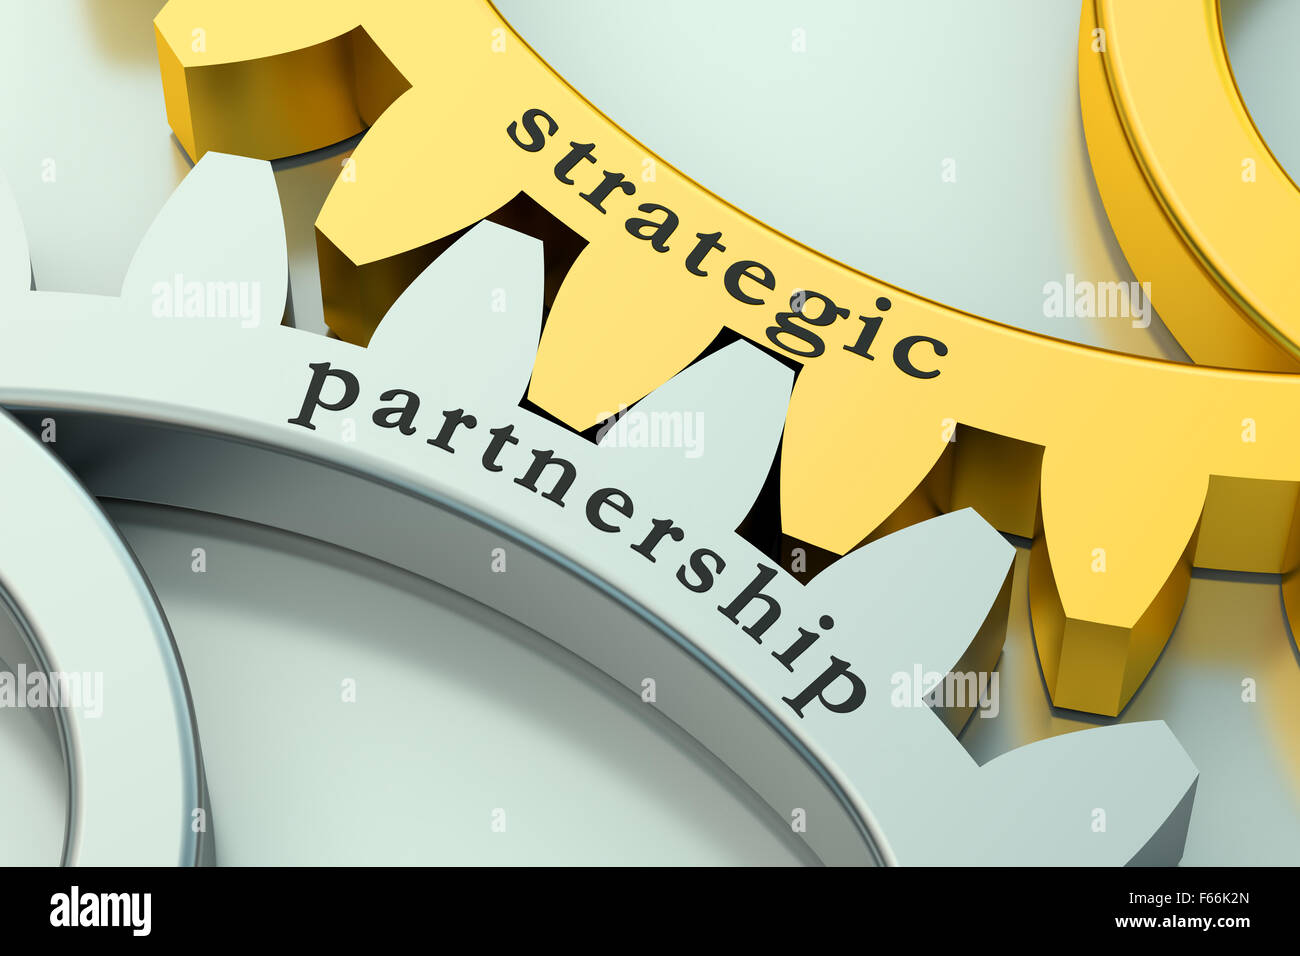 Le concept de partenariat stratégique sur les roues dentées Banque D'Images